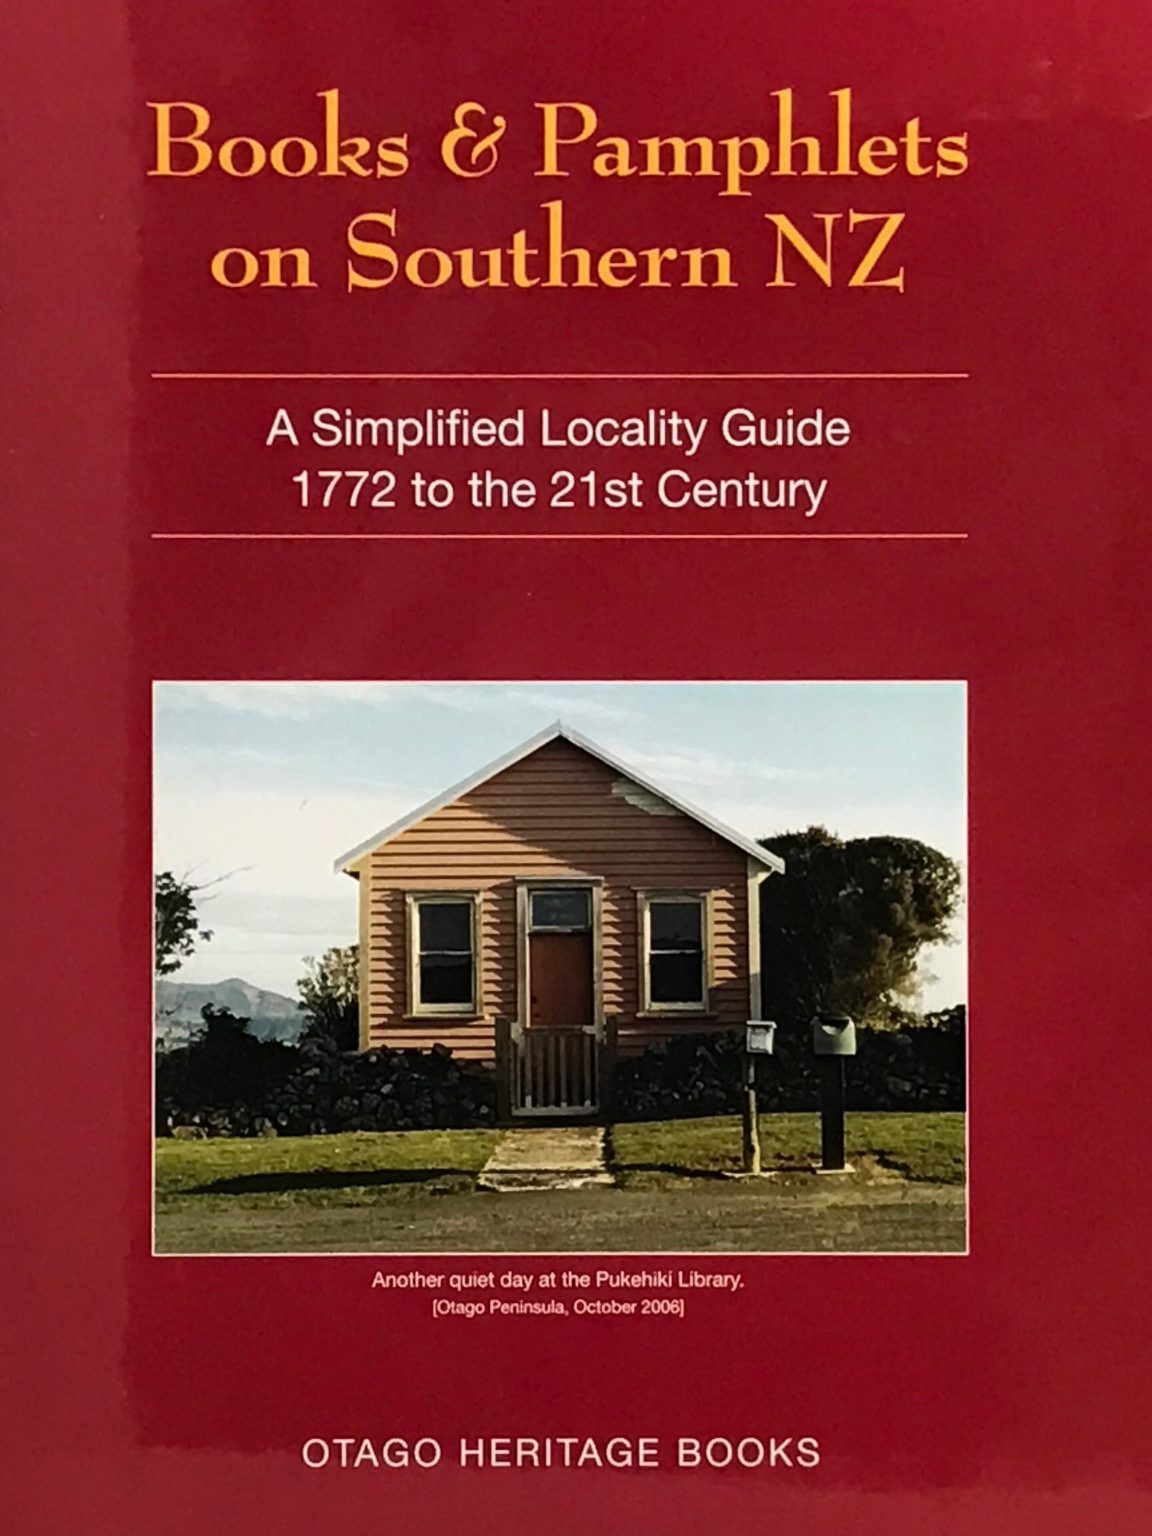 BOOKS & PAMPHLETS ON SOUTHERN NEW ZEALAND